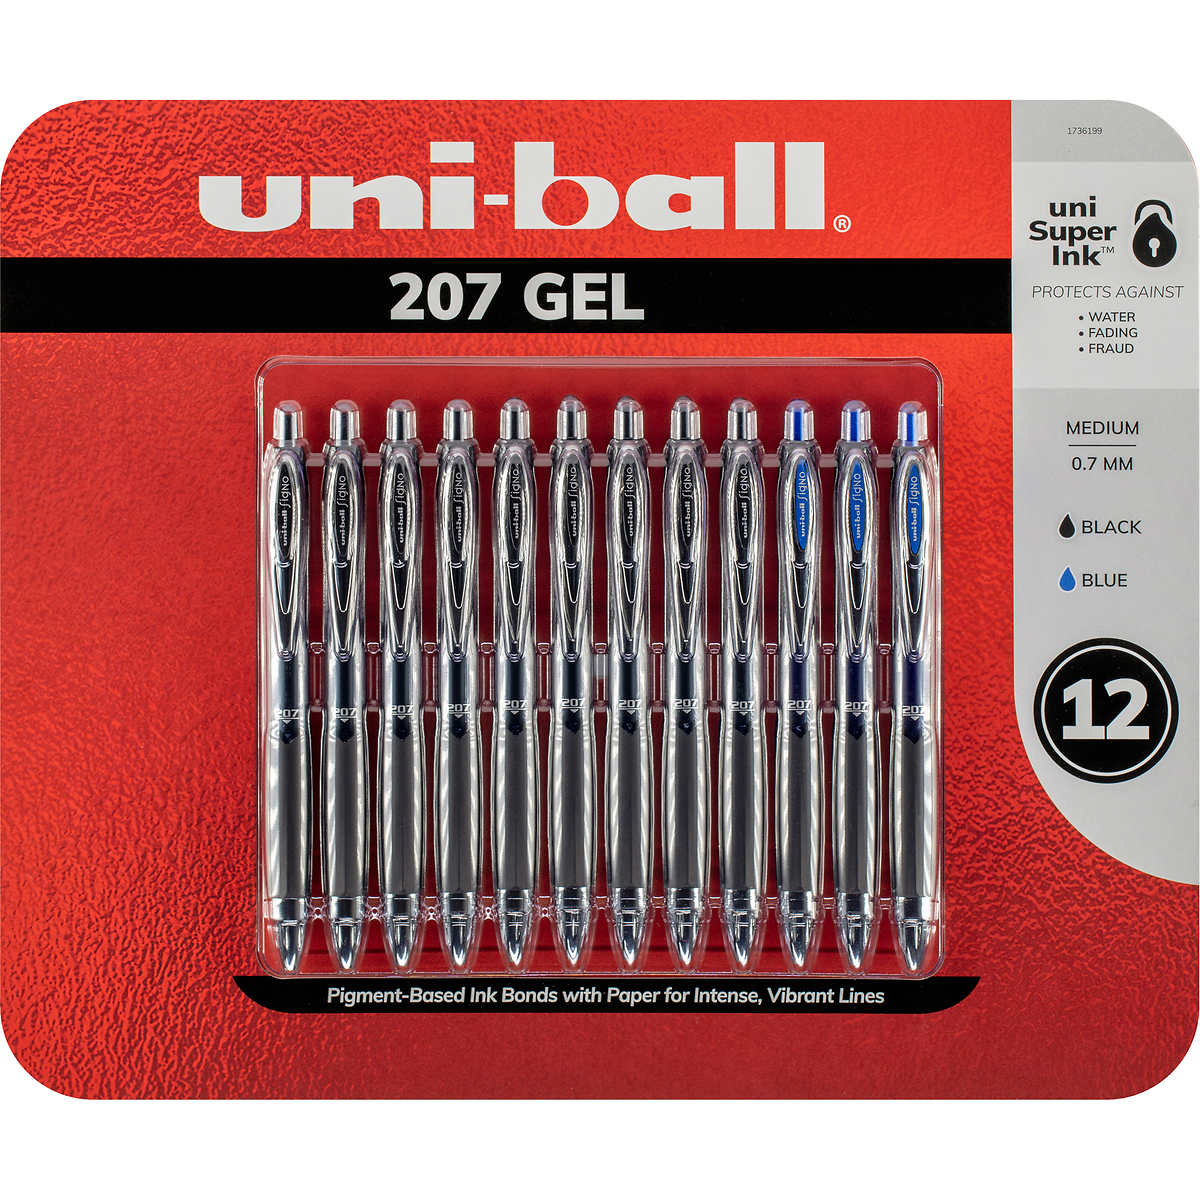 Pen+gear Retractable Gel Pens - Black - 12 ct